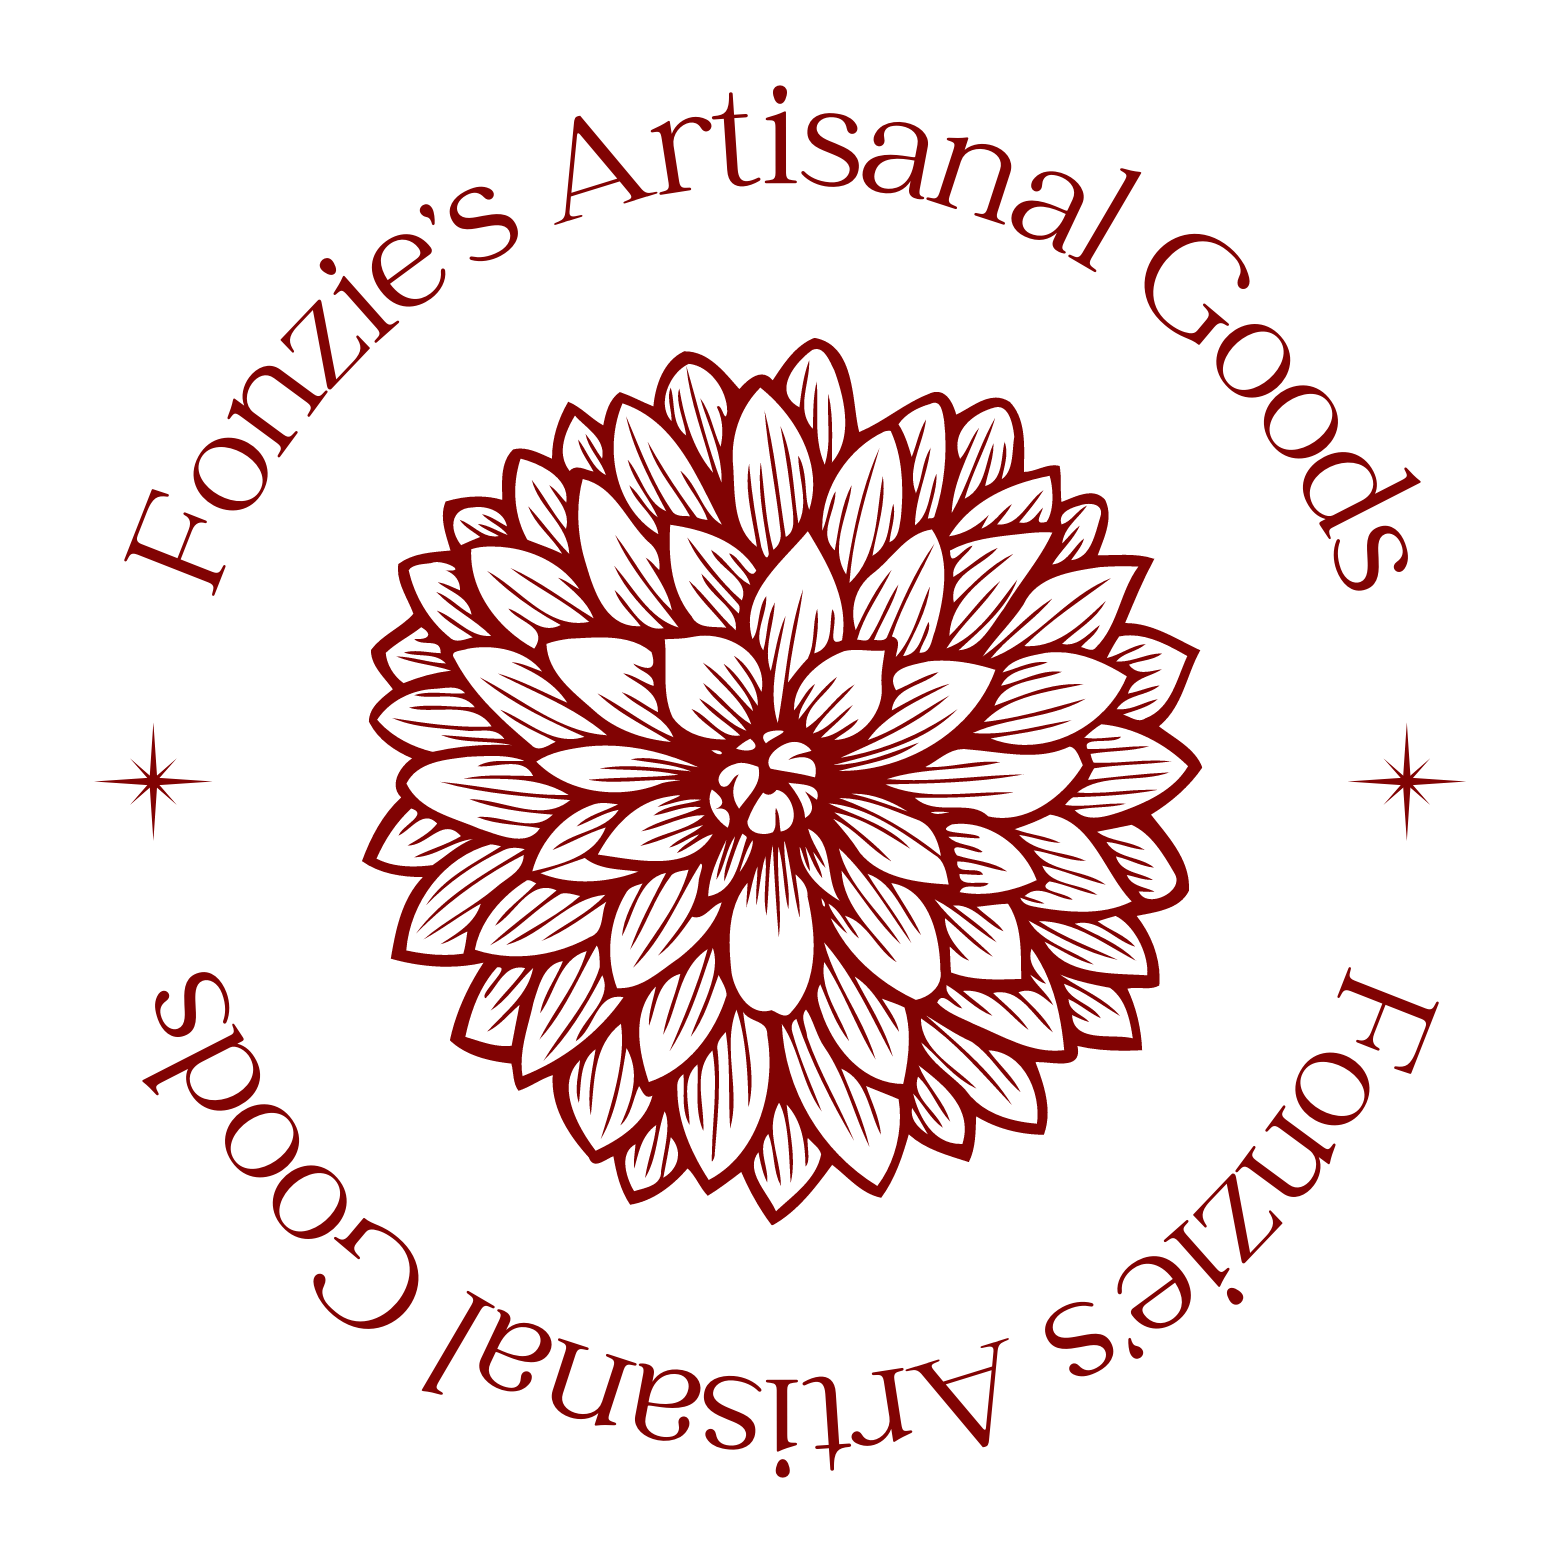 fonzie’s artisanal goods